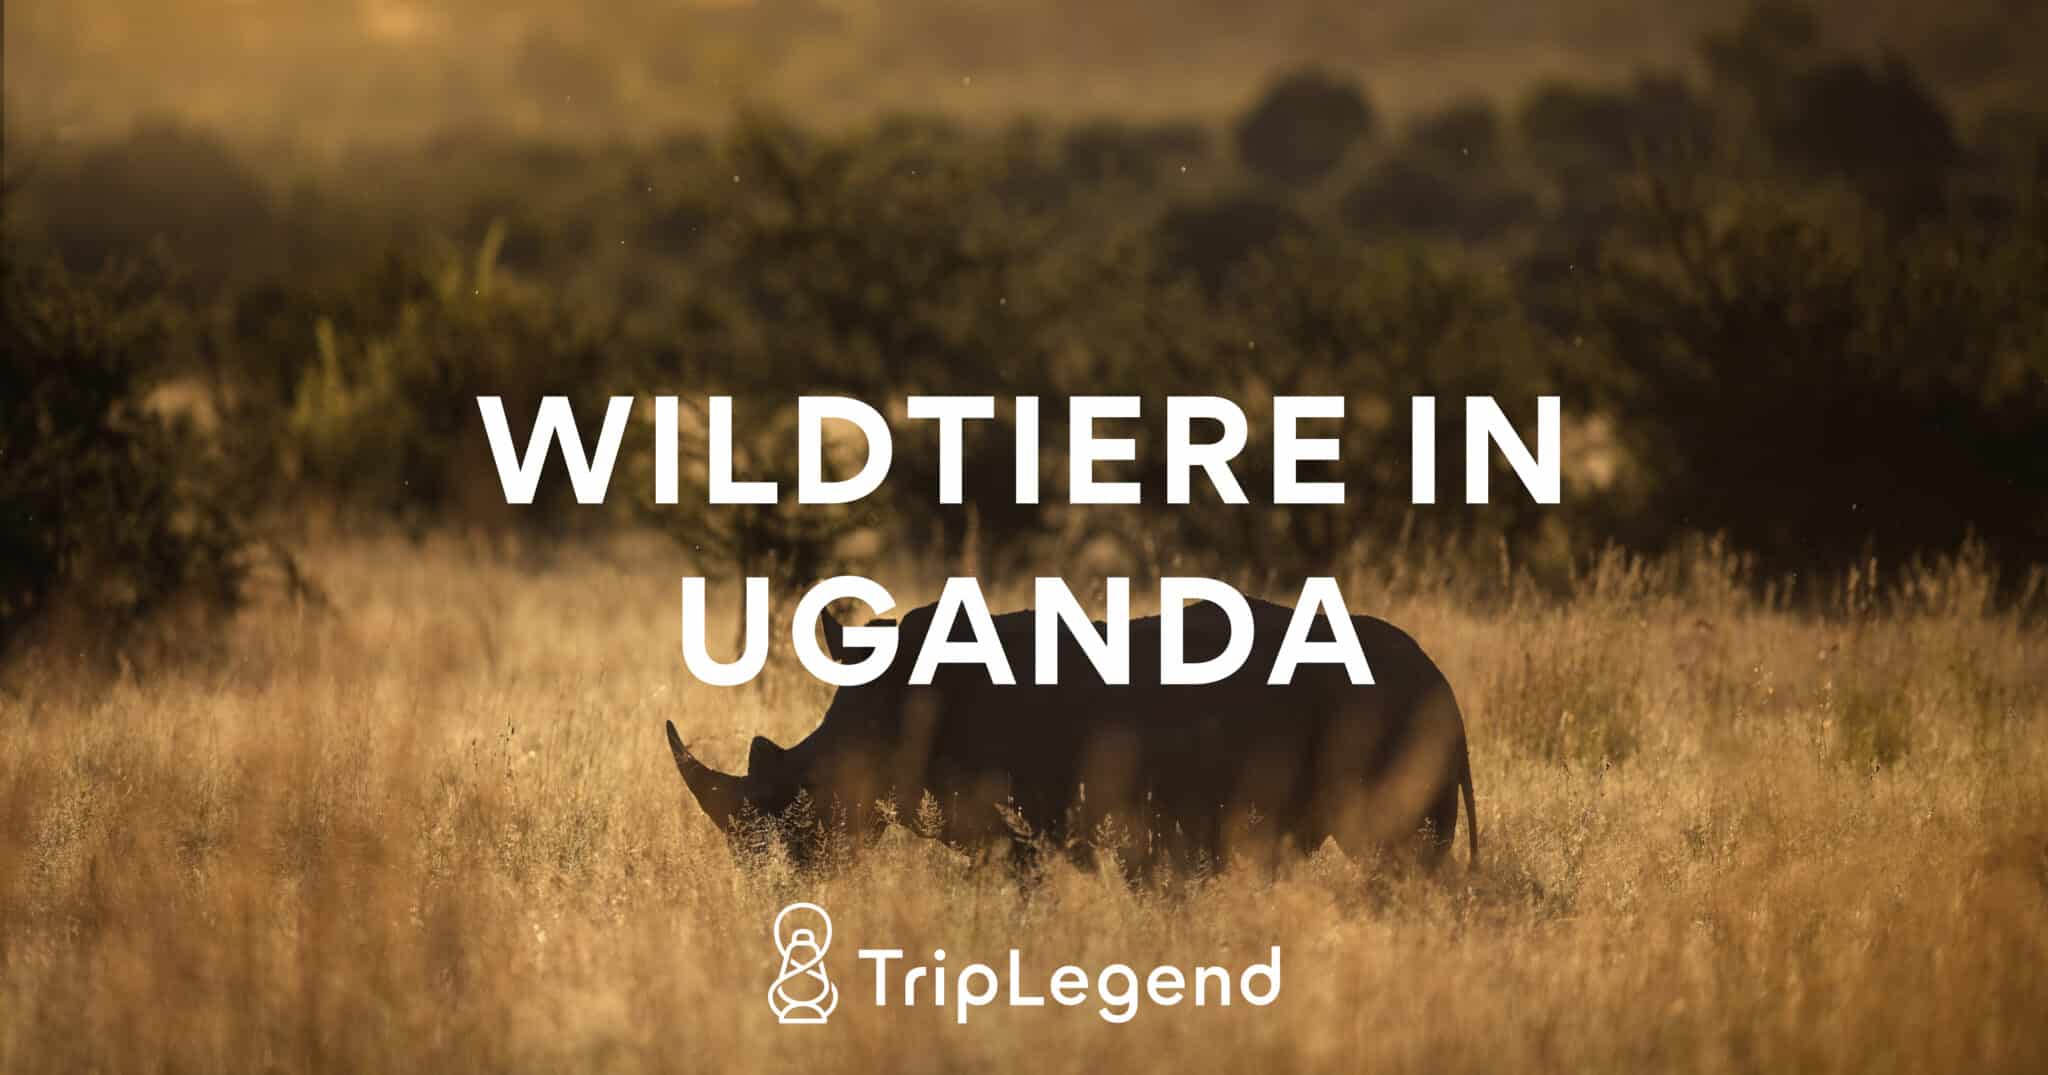 Afbeelding voor het artikel over wilde dieren in Oeganda